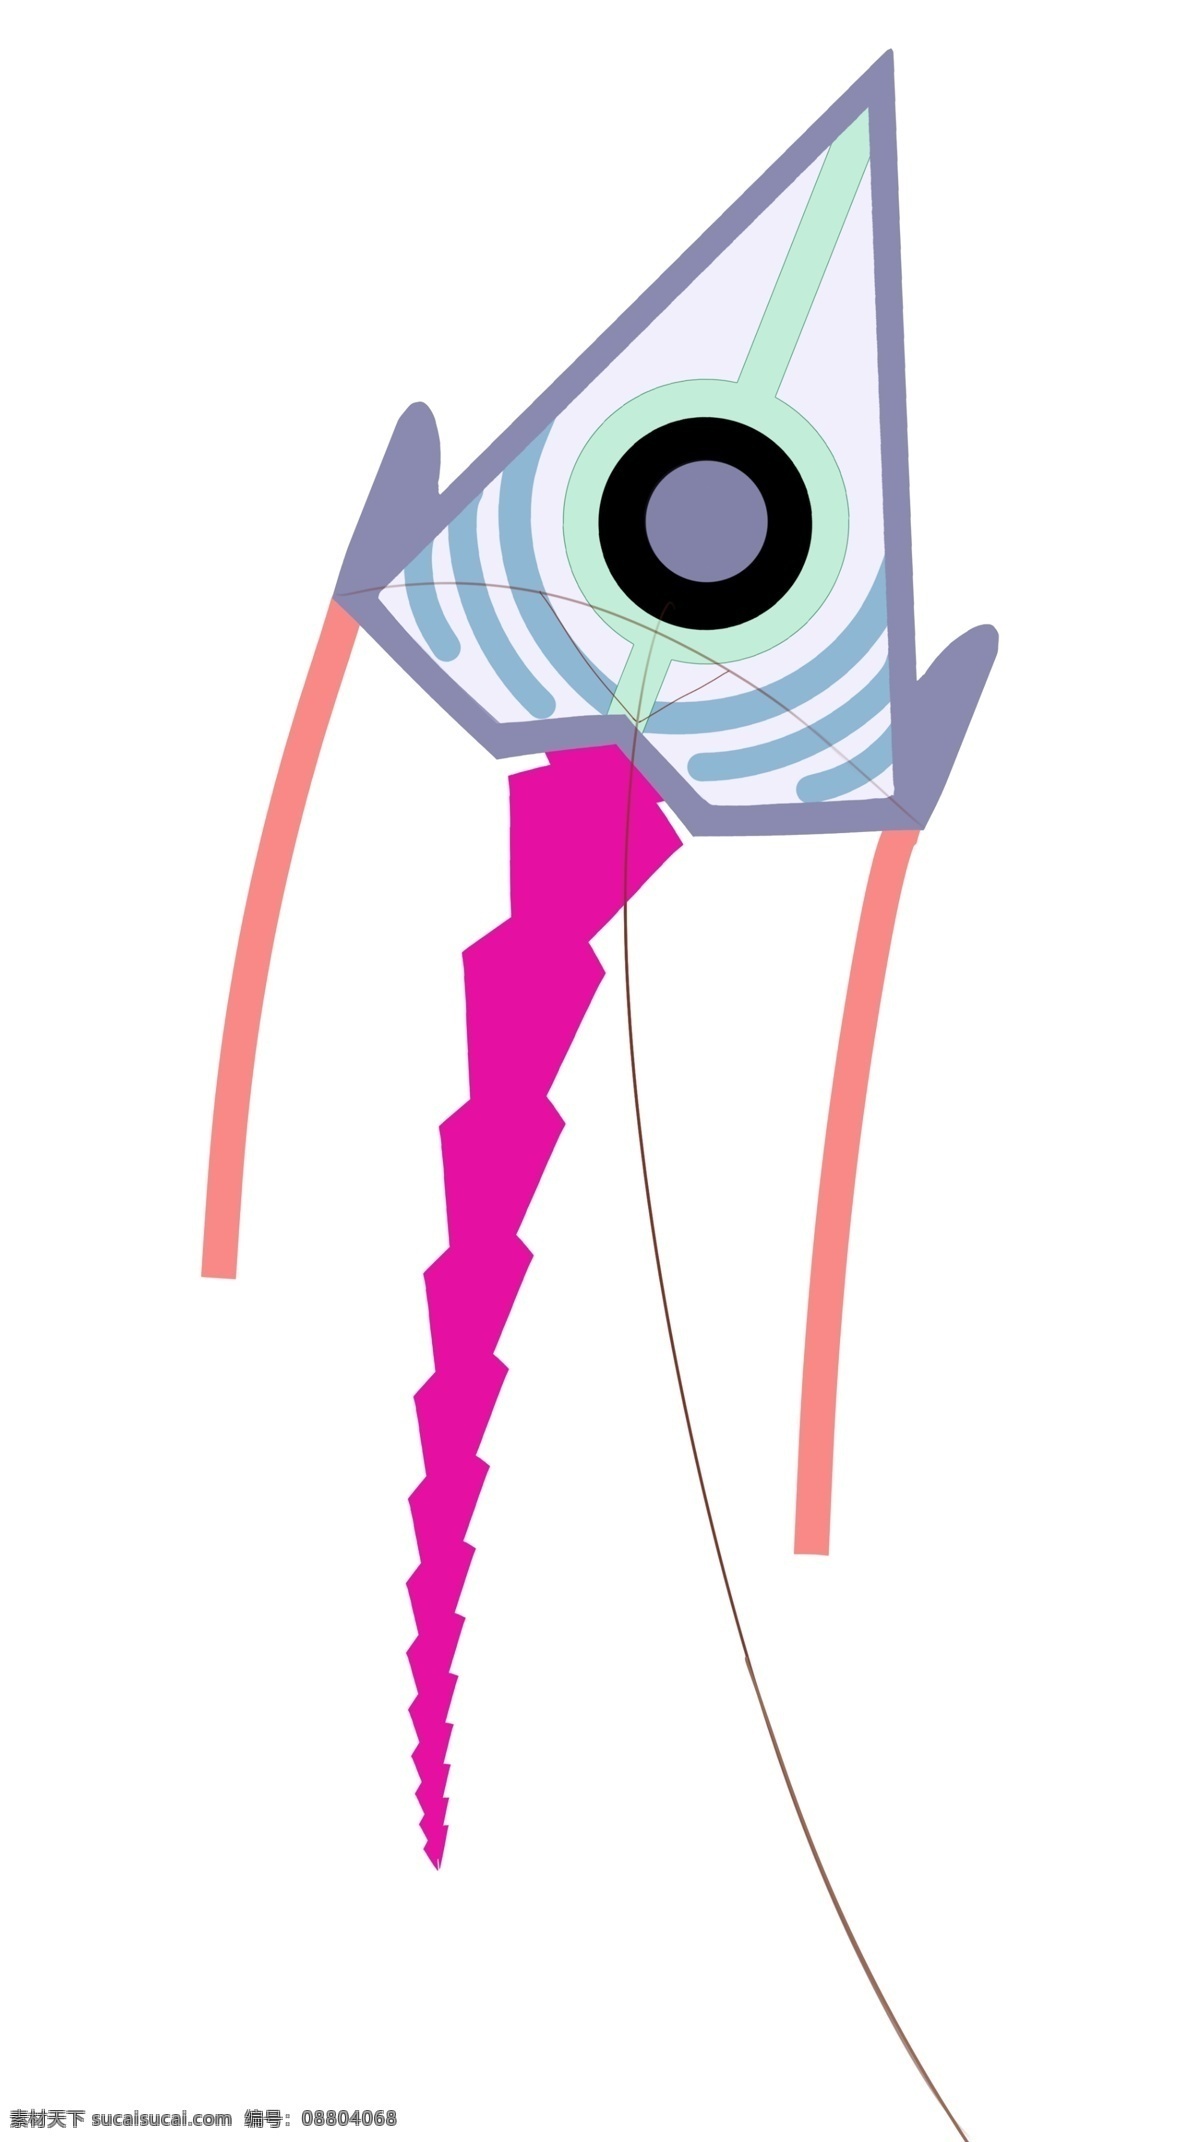 眼球 风筝 卡通 插画 眼球的风筝 卡通插画 风筝插画 玩具插画 玩具风筝 风筝模型 蓝色的风筝